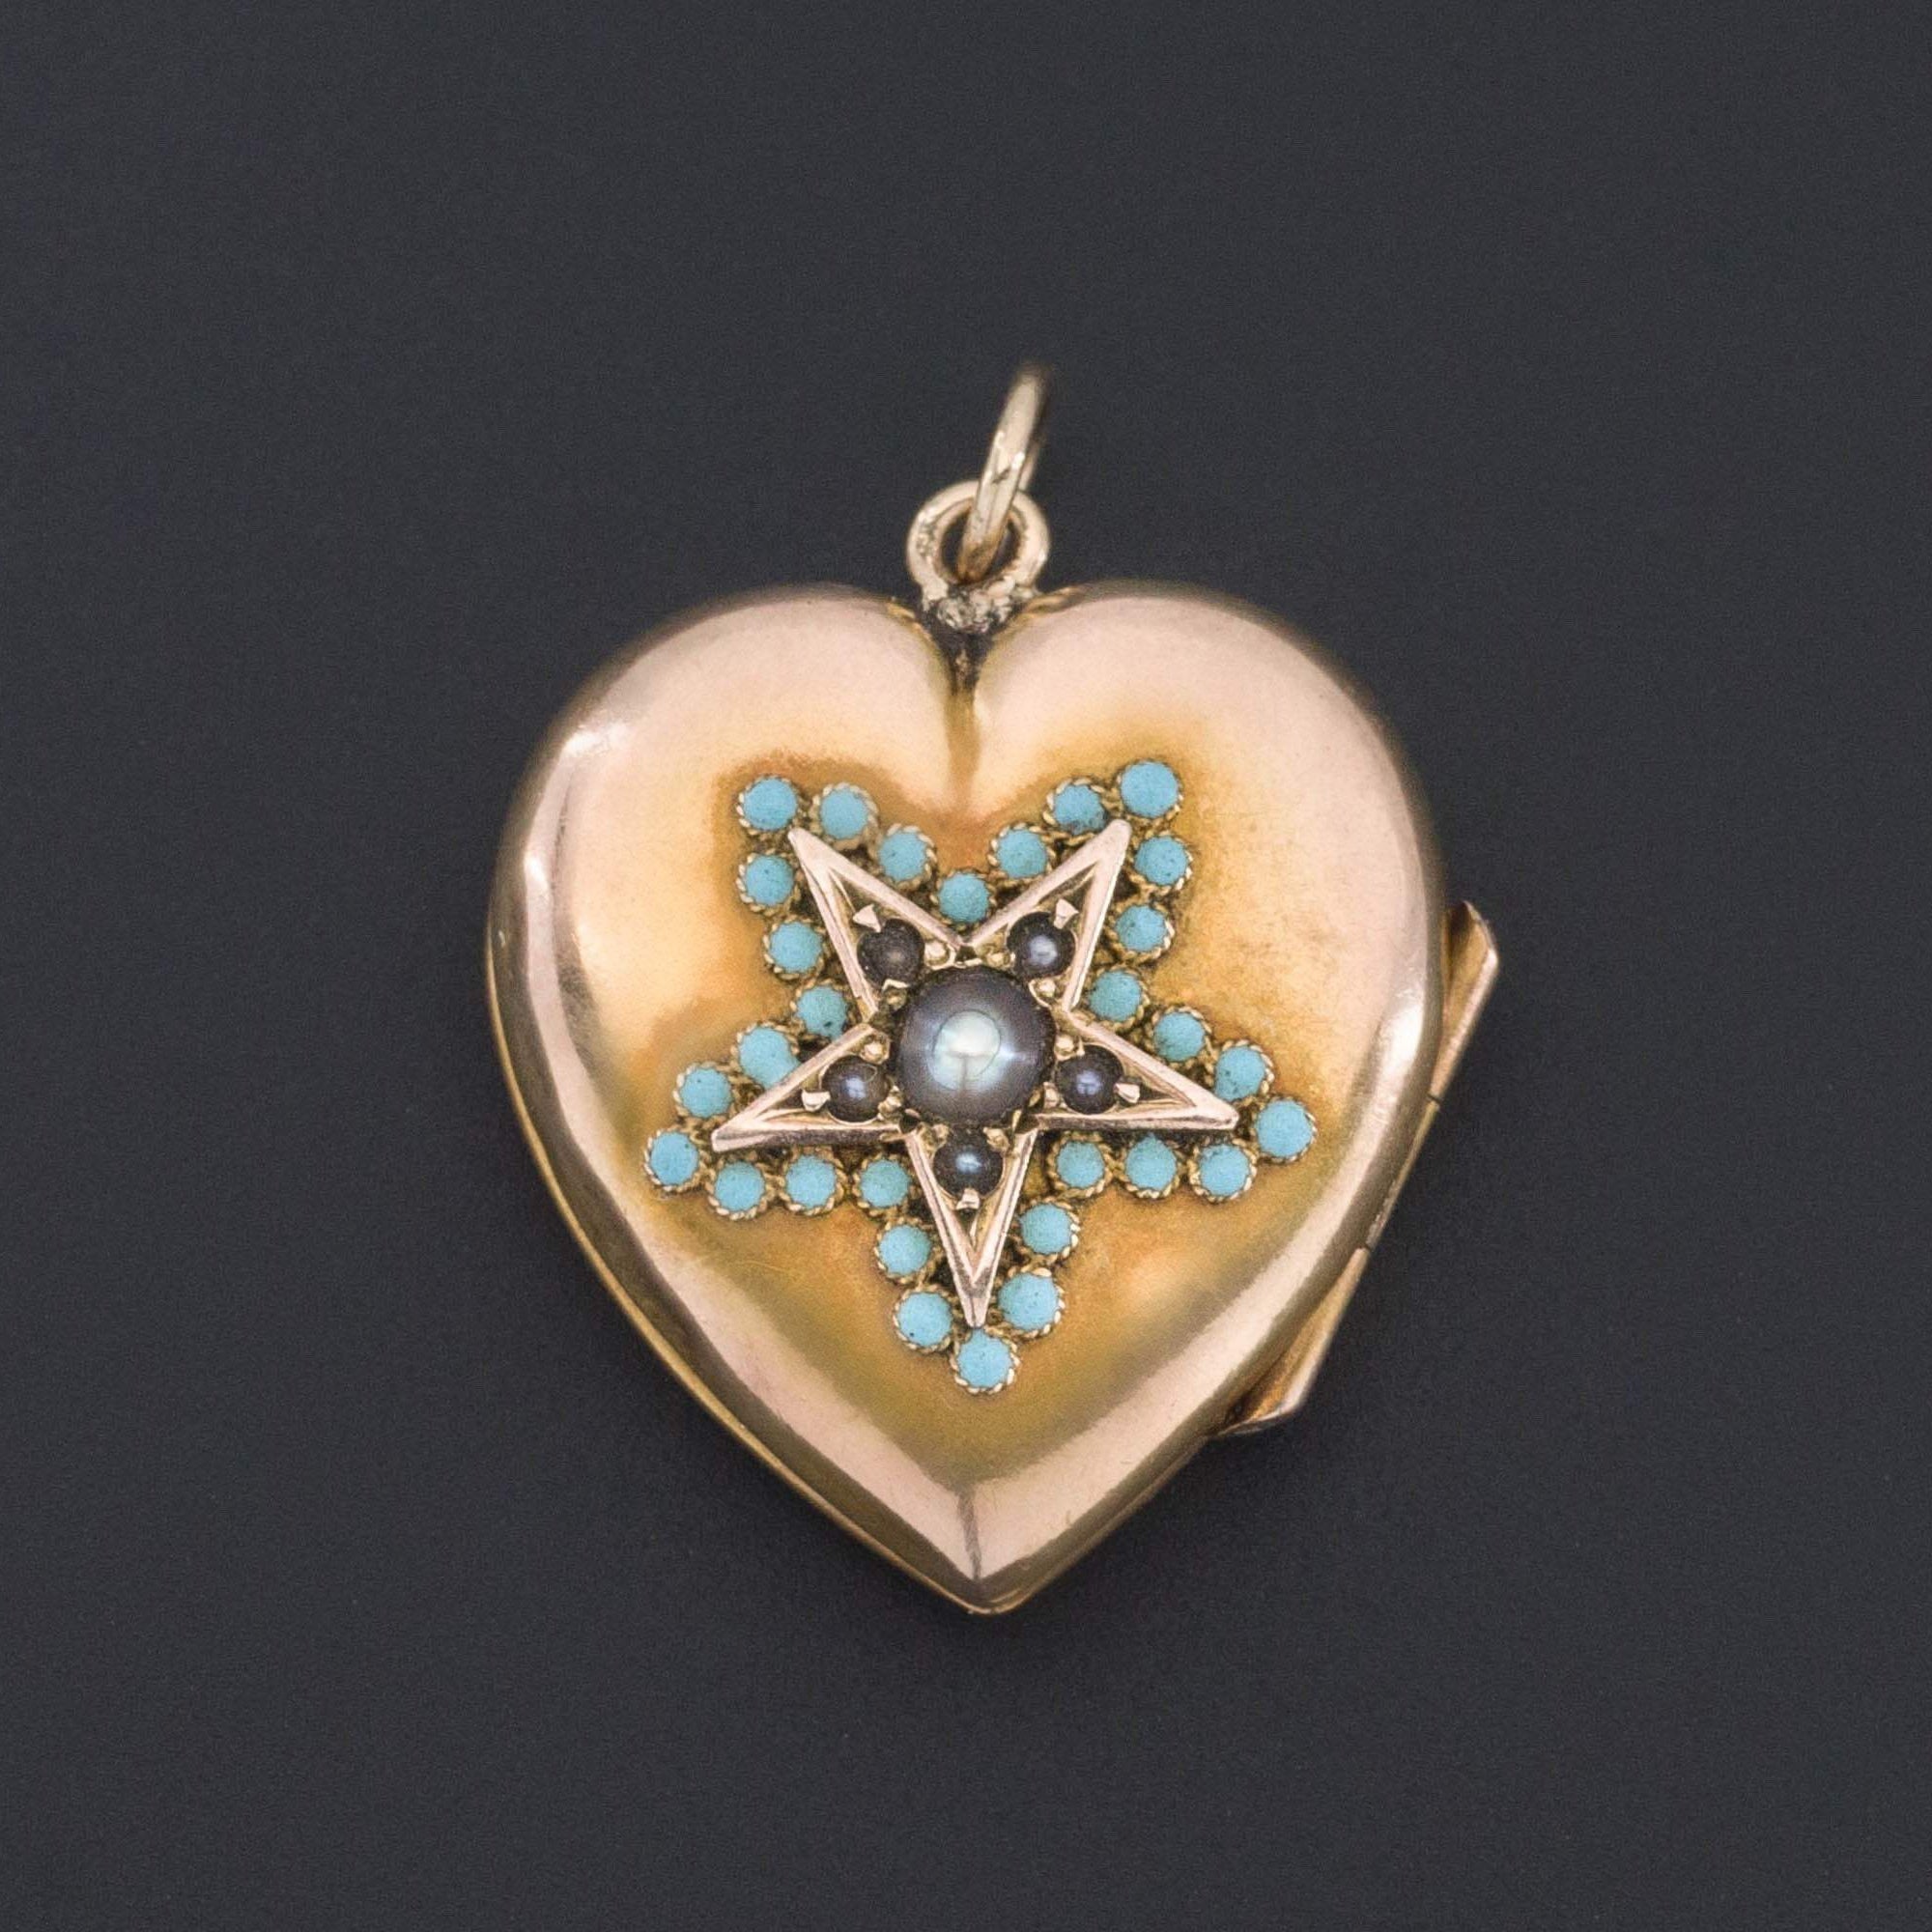 Heart Locket | Antique Heart Locket | 10k Gold Locket with Turquoise & Pearl Star | Antique Heart Locket